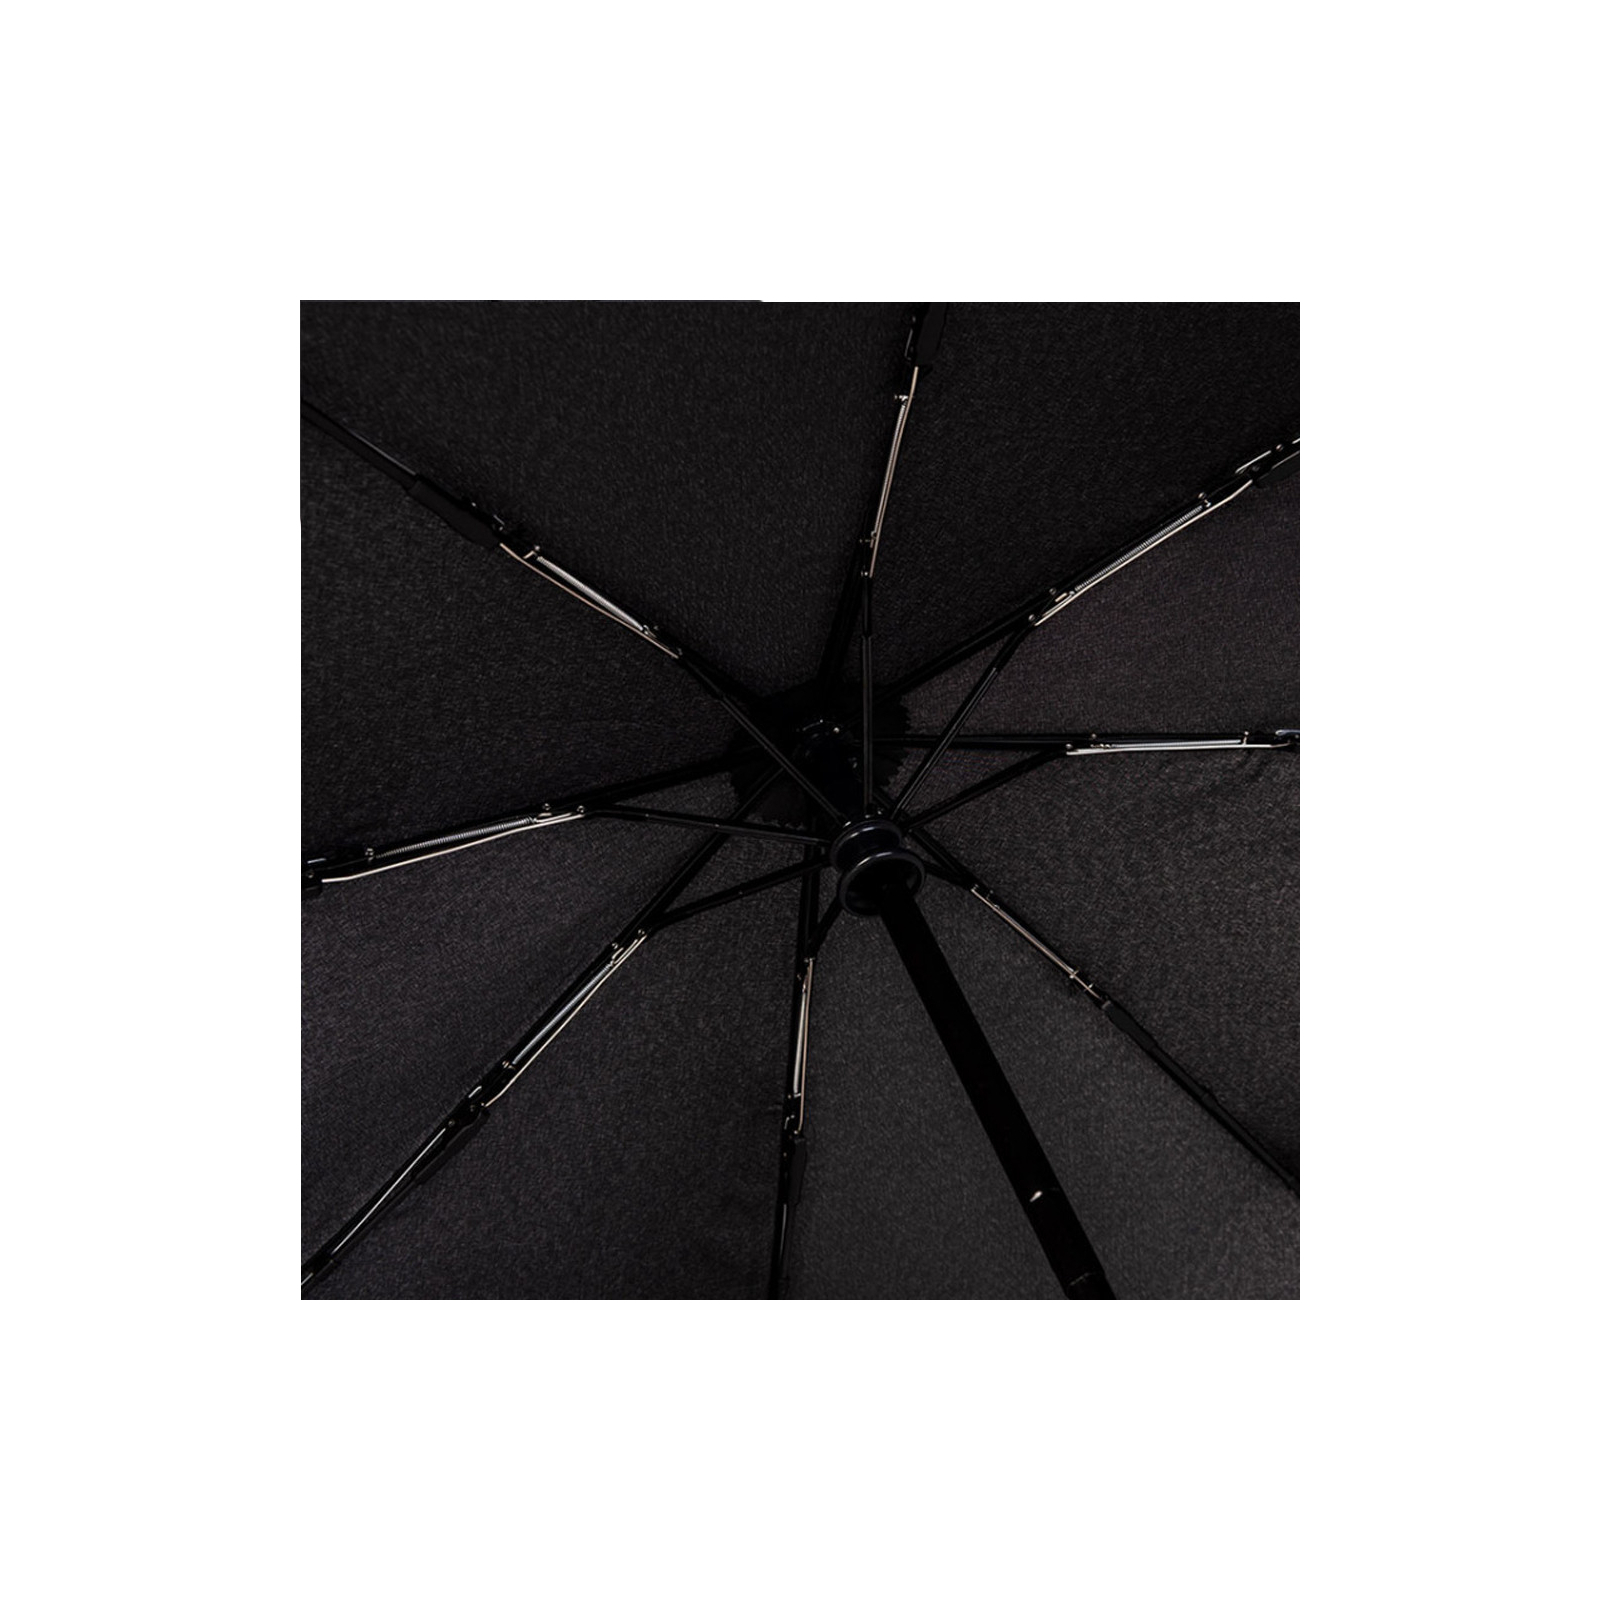 Зонт Knirps A.200 Medium Duomatic 2Fly Black складной (Kn95 7200 8516) изображение 4